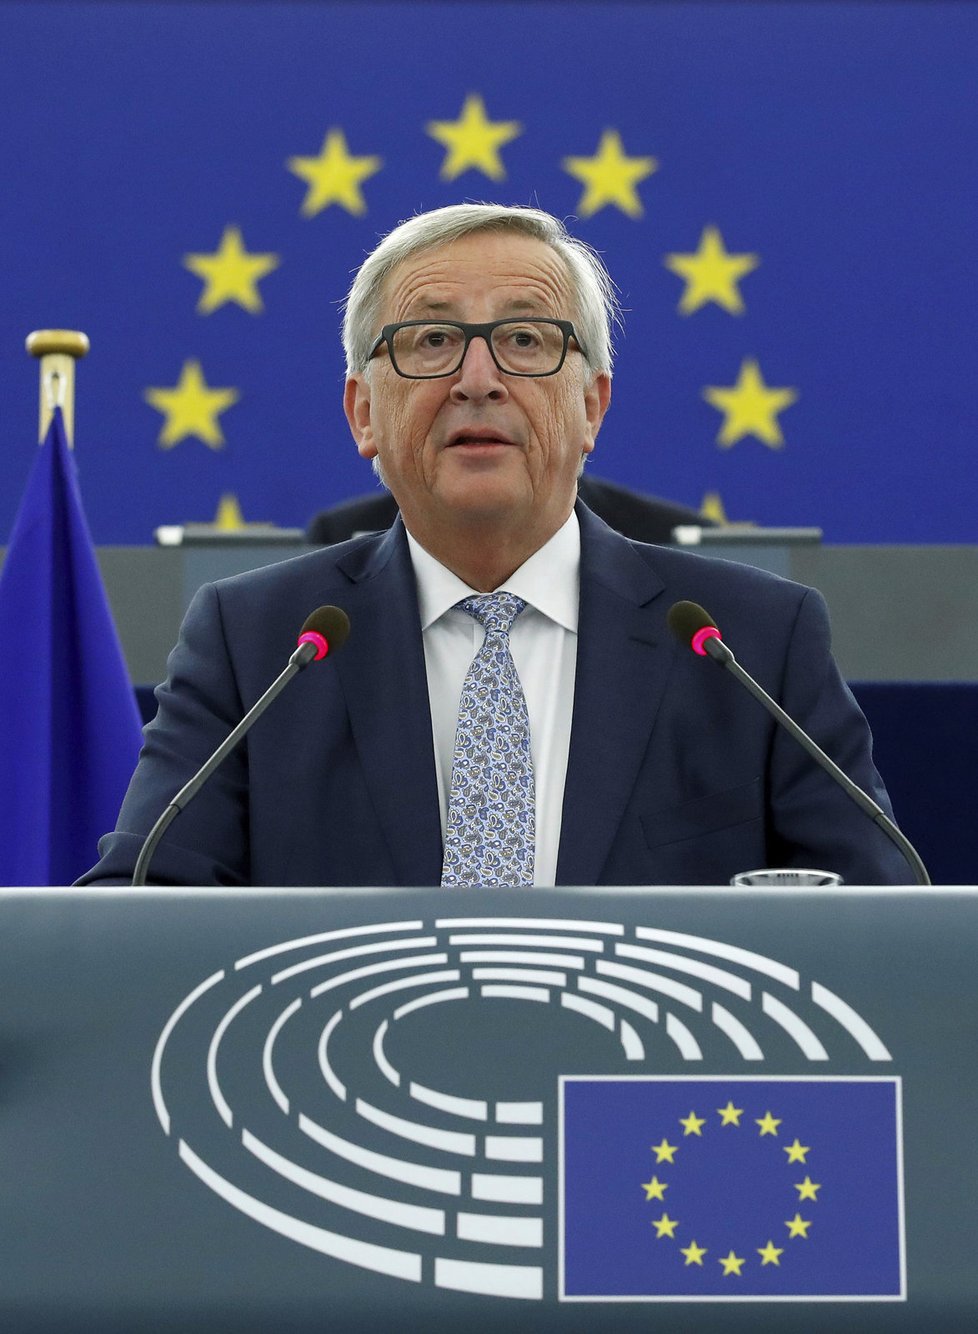 Šéf Evropské komise Juncker